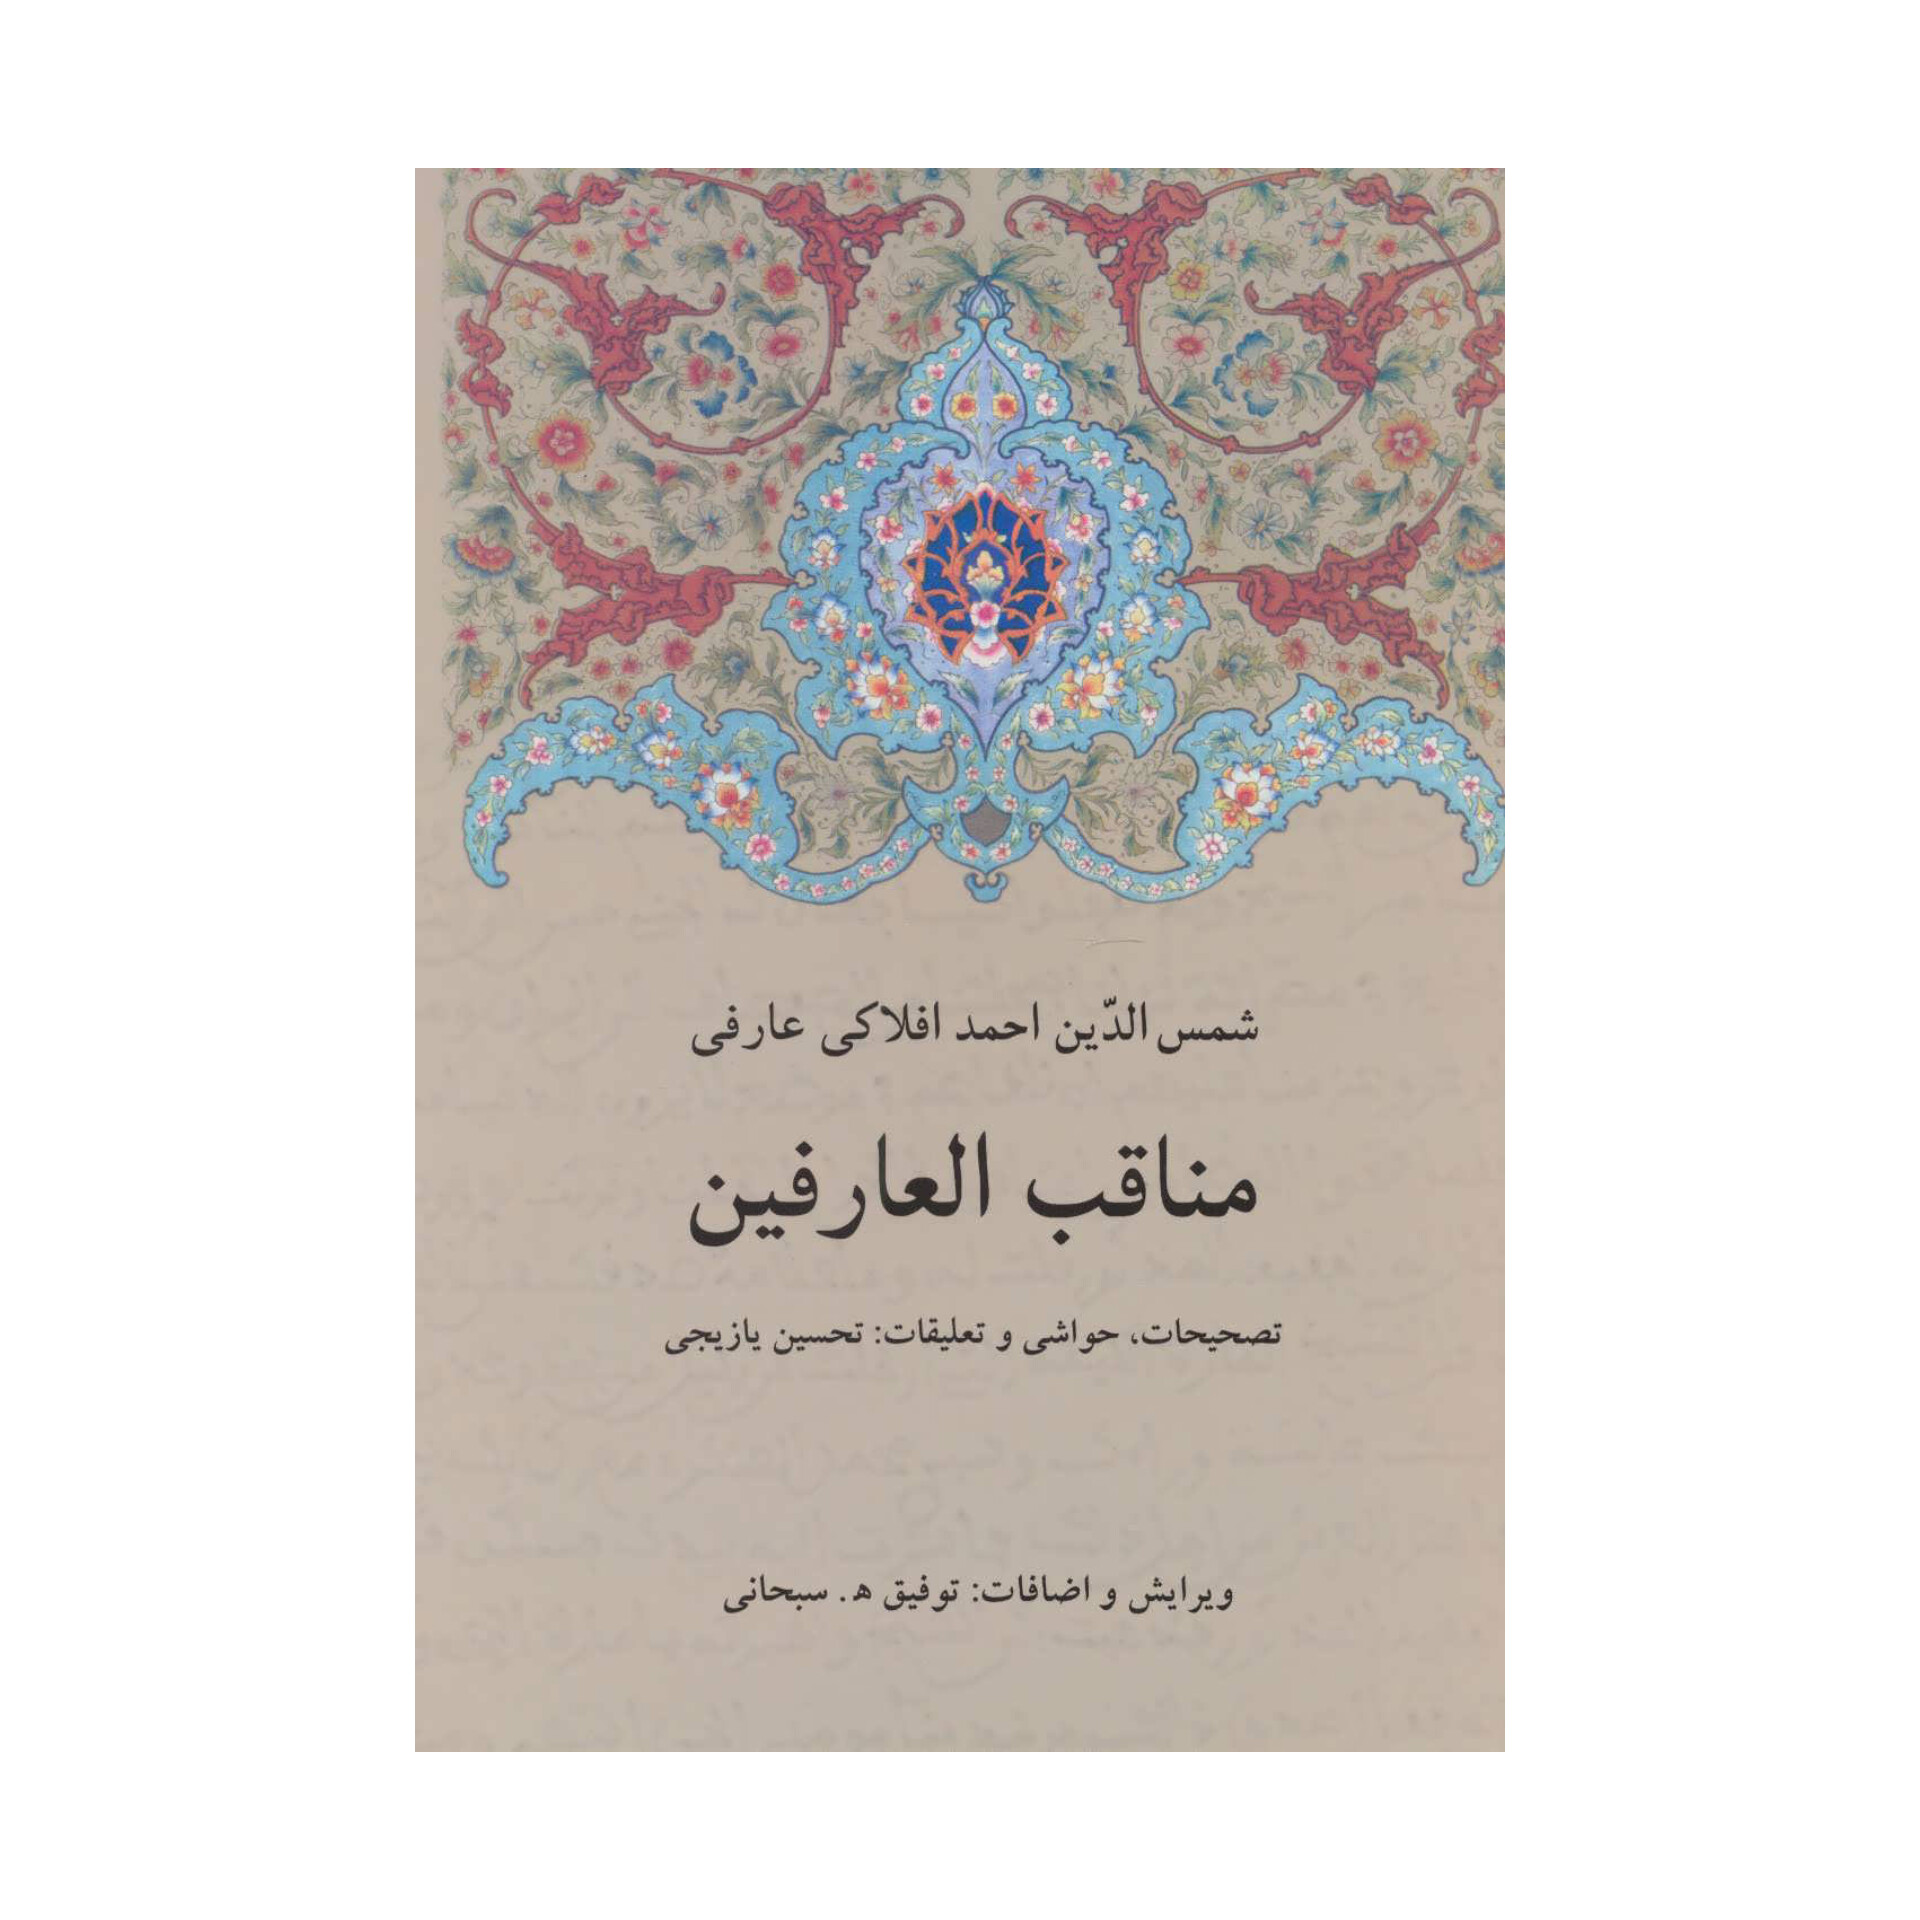 کتاب مناقب العارفین (دوجلد)/ شمس الدین احمد افلاکی عارفی